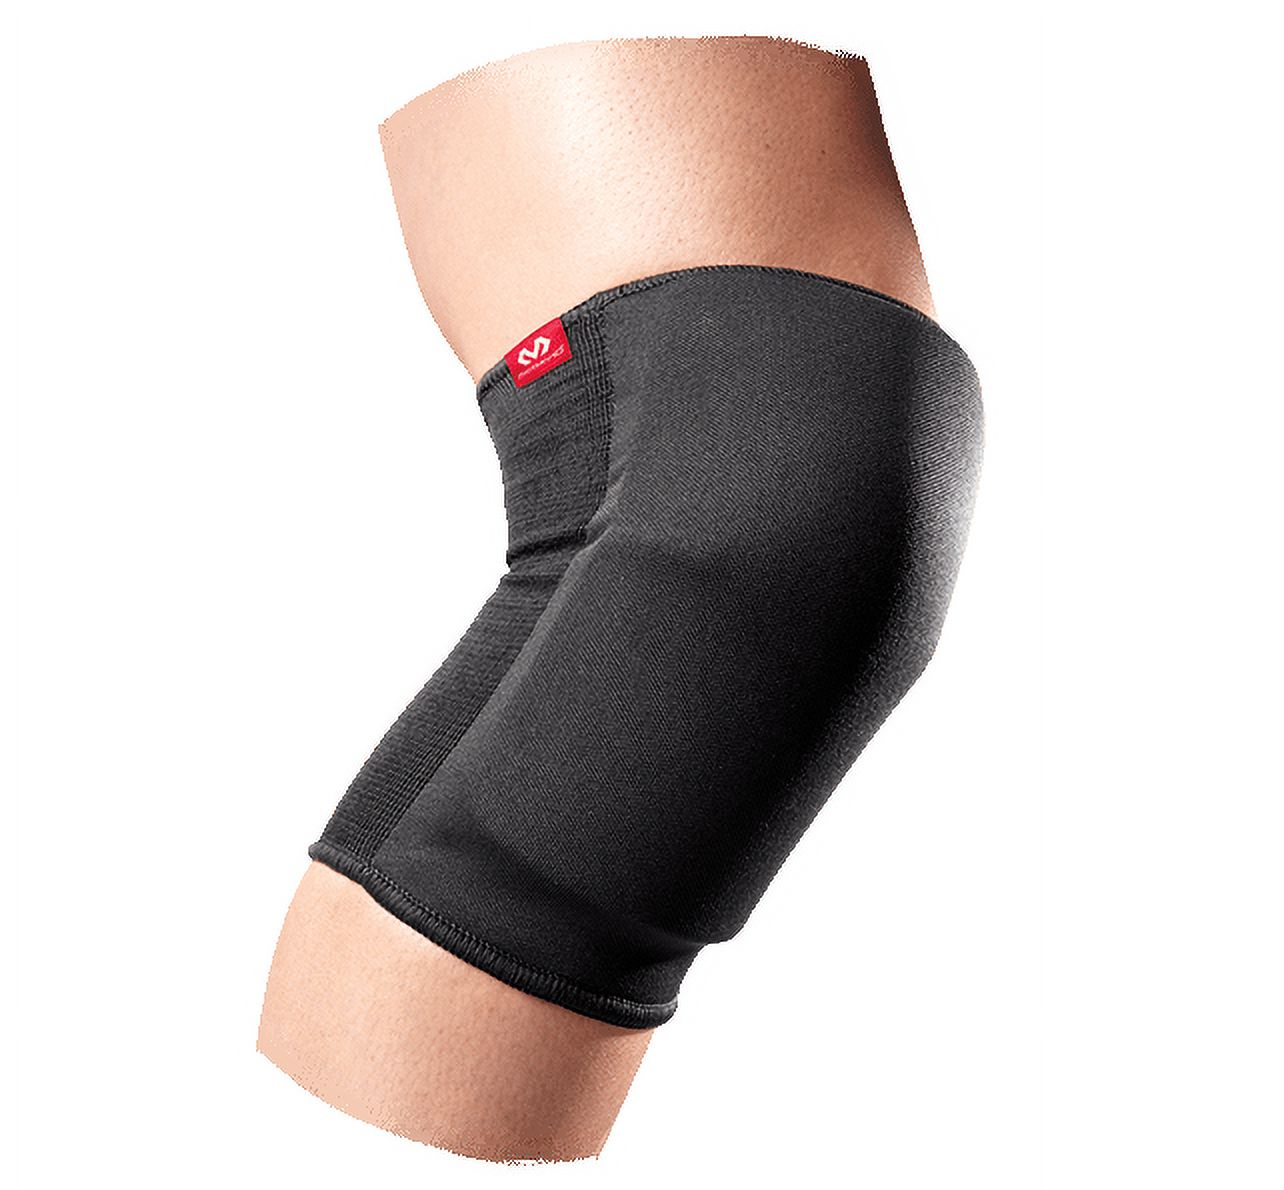 McDavid MD645 Knee/Elbow Pads/Pair, Adult S, BLACK - image 1 of 3